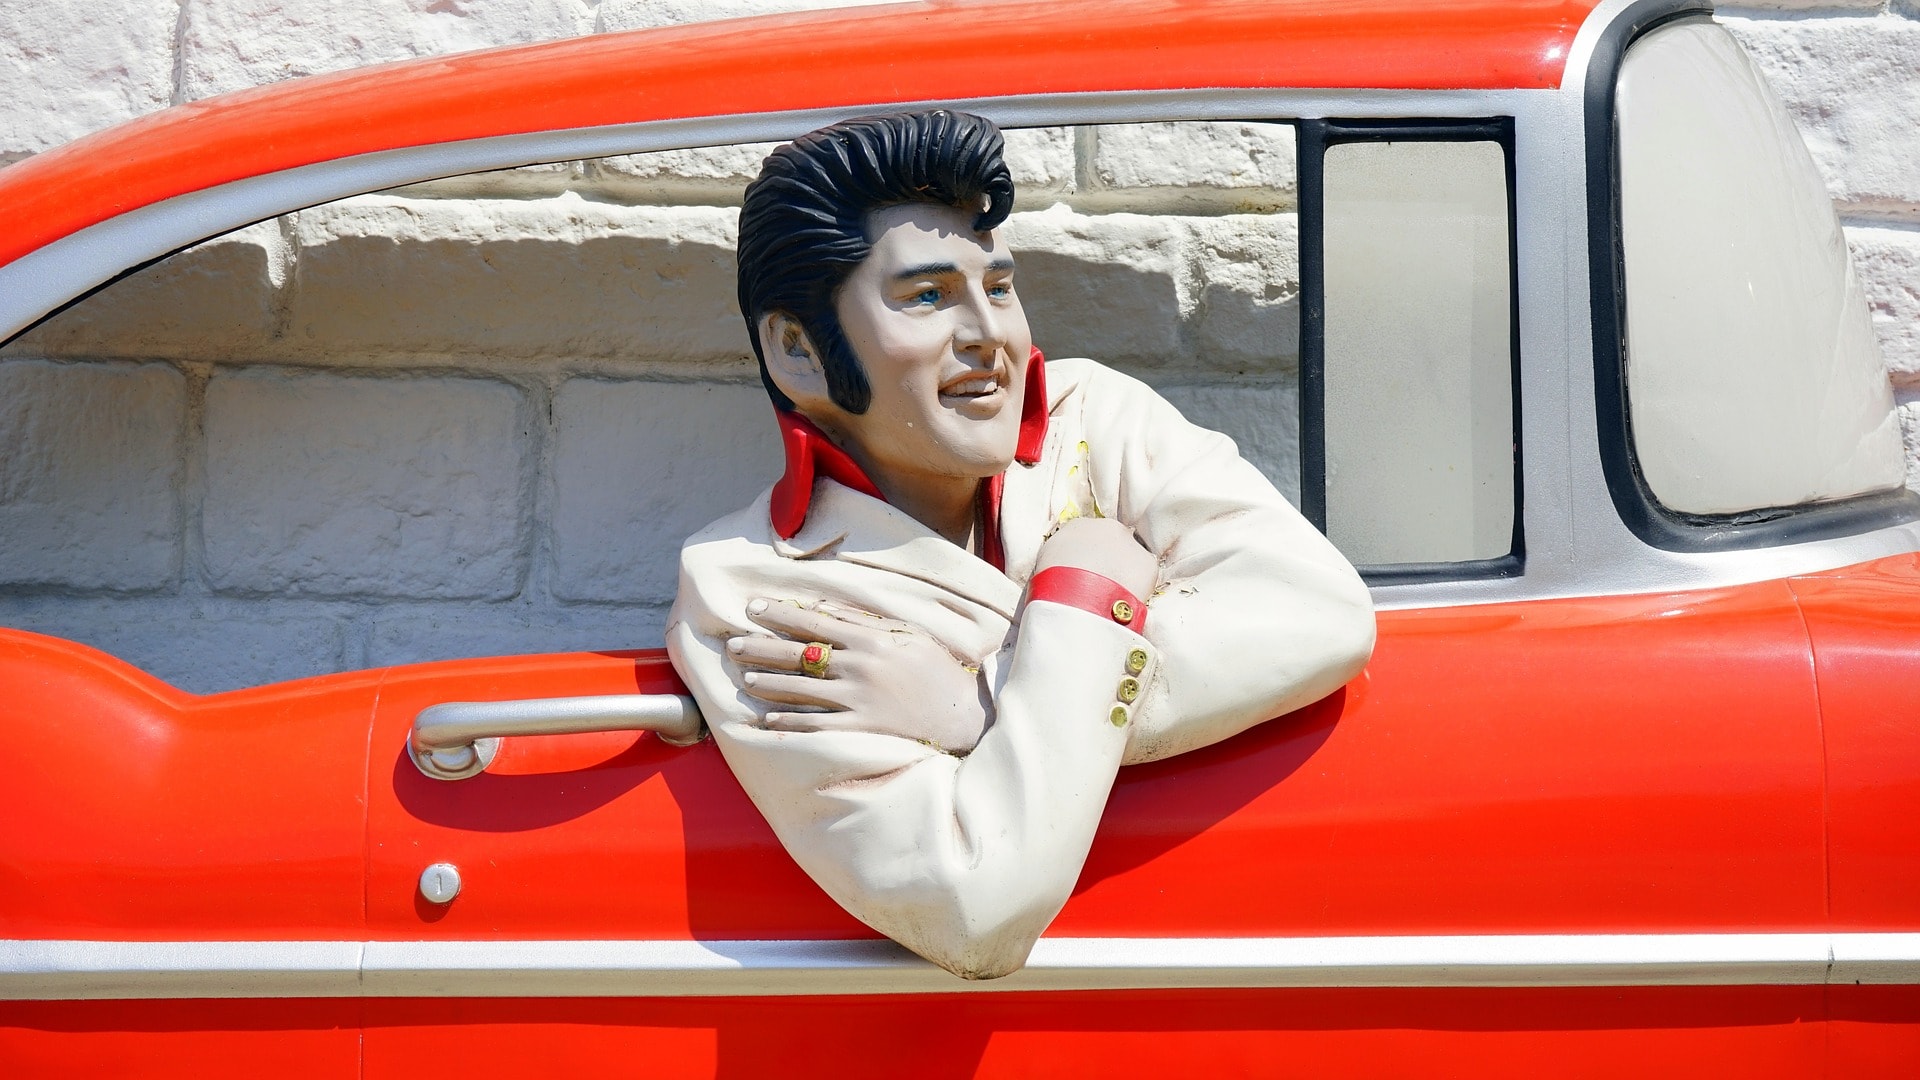 An Elvis Presley tribute